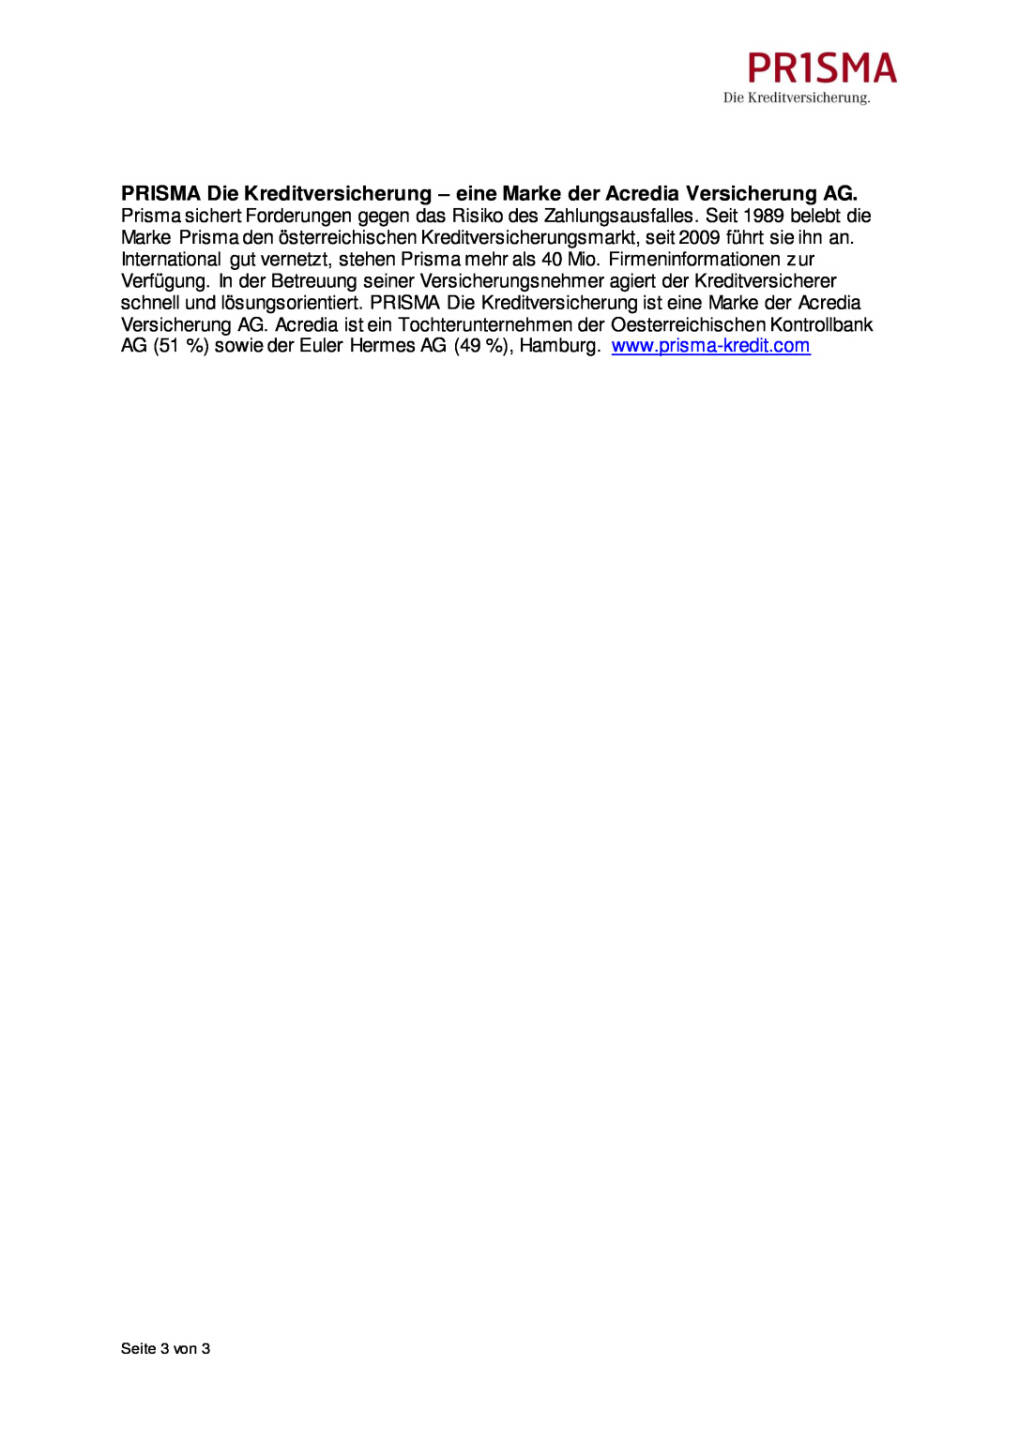 Prisma Die Kreditversicherung: Kopf-an-Kopf-Rennen der Chemieunternehmen in Europa und den USA, Seite 3/3, komplettes Dokument unter http://boerse-social.com/static/uploads/file_1941_prisma_die_kreditversicherung_kopf-an-kopf-rennen_der_chemieunternehmen_in_europa_und_den_usa.pdf